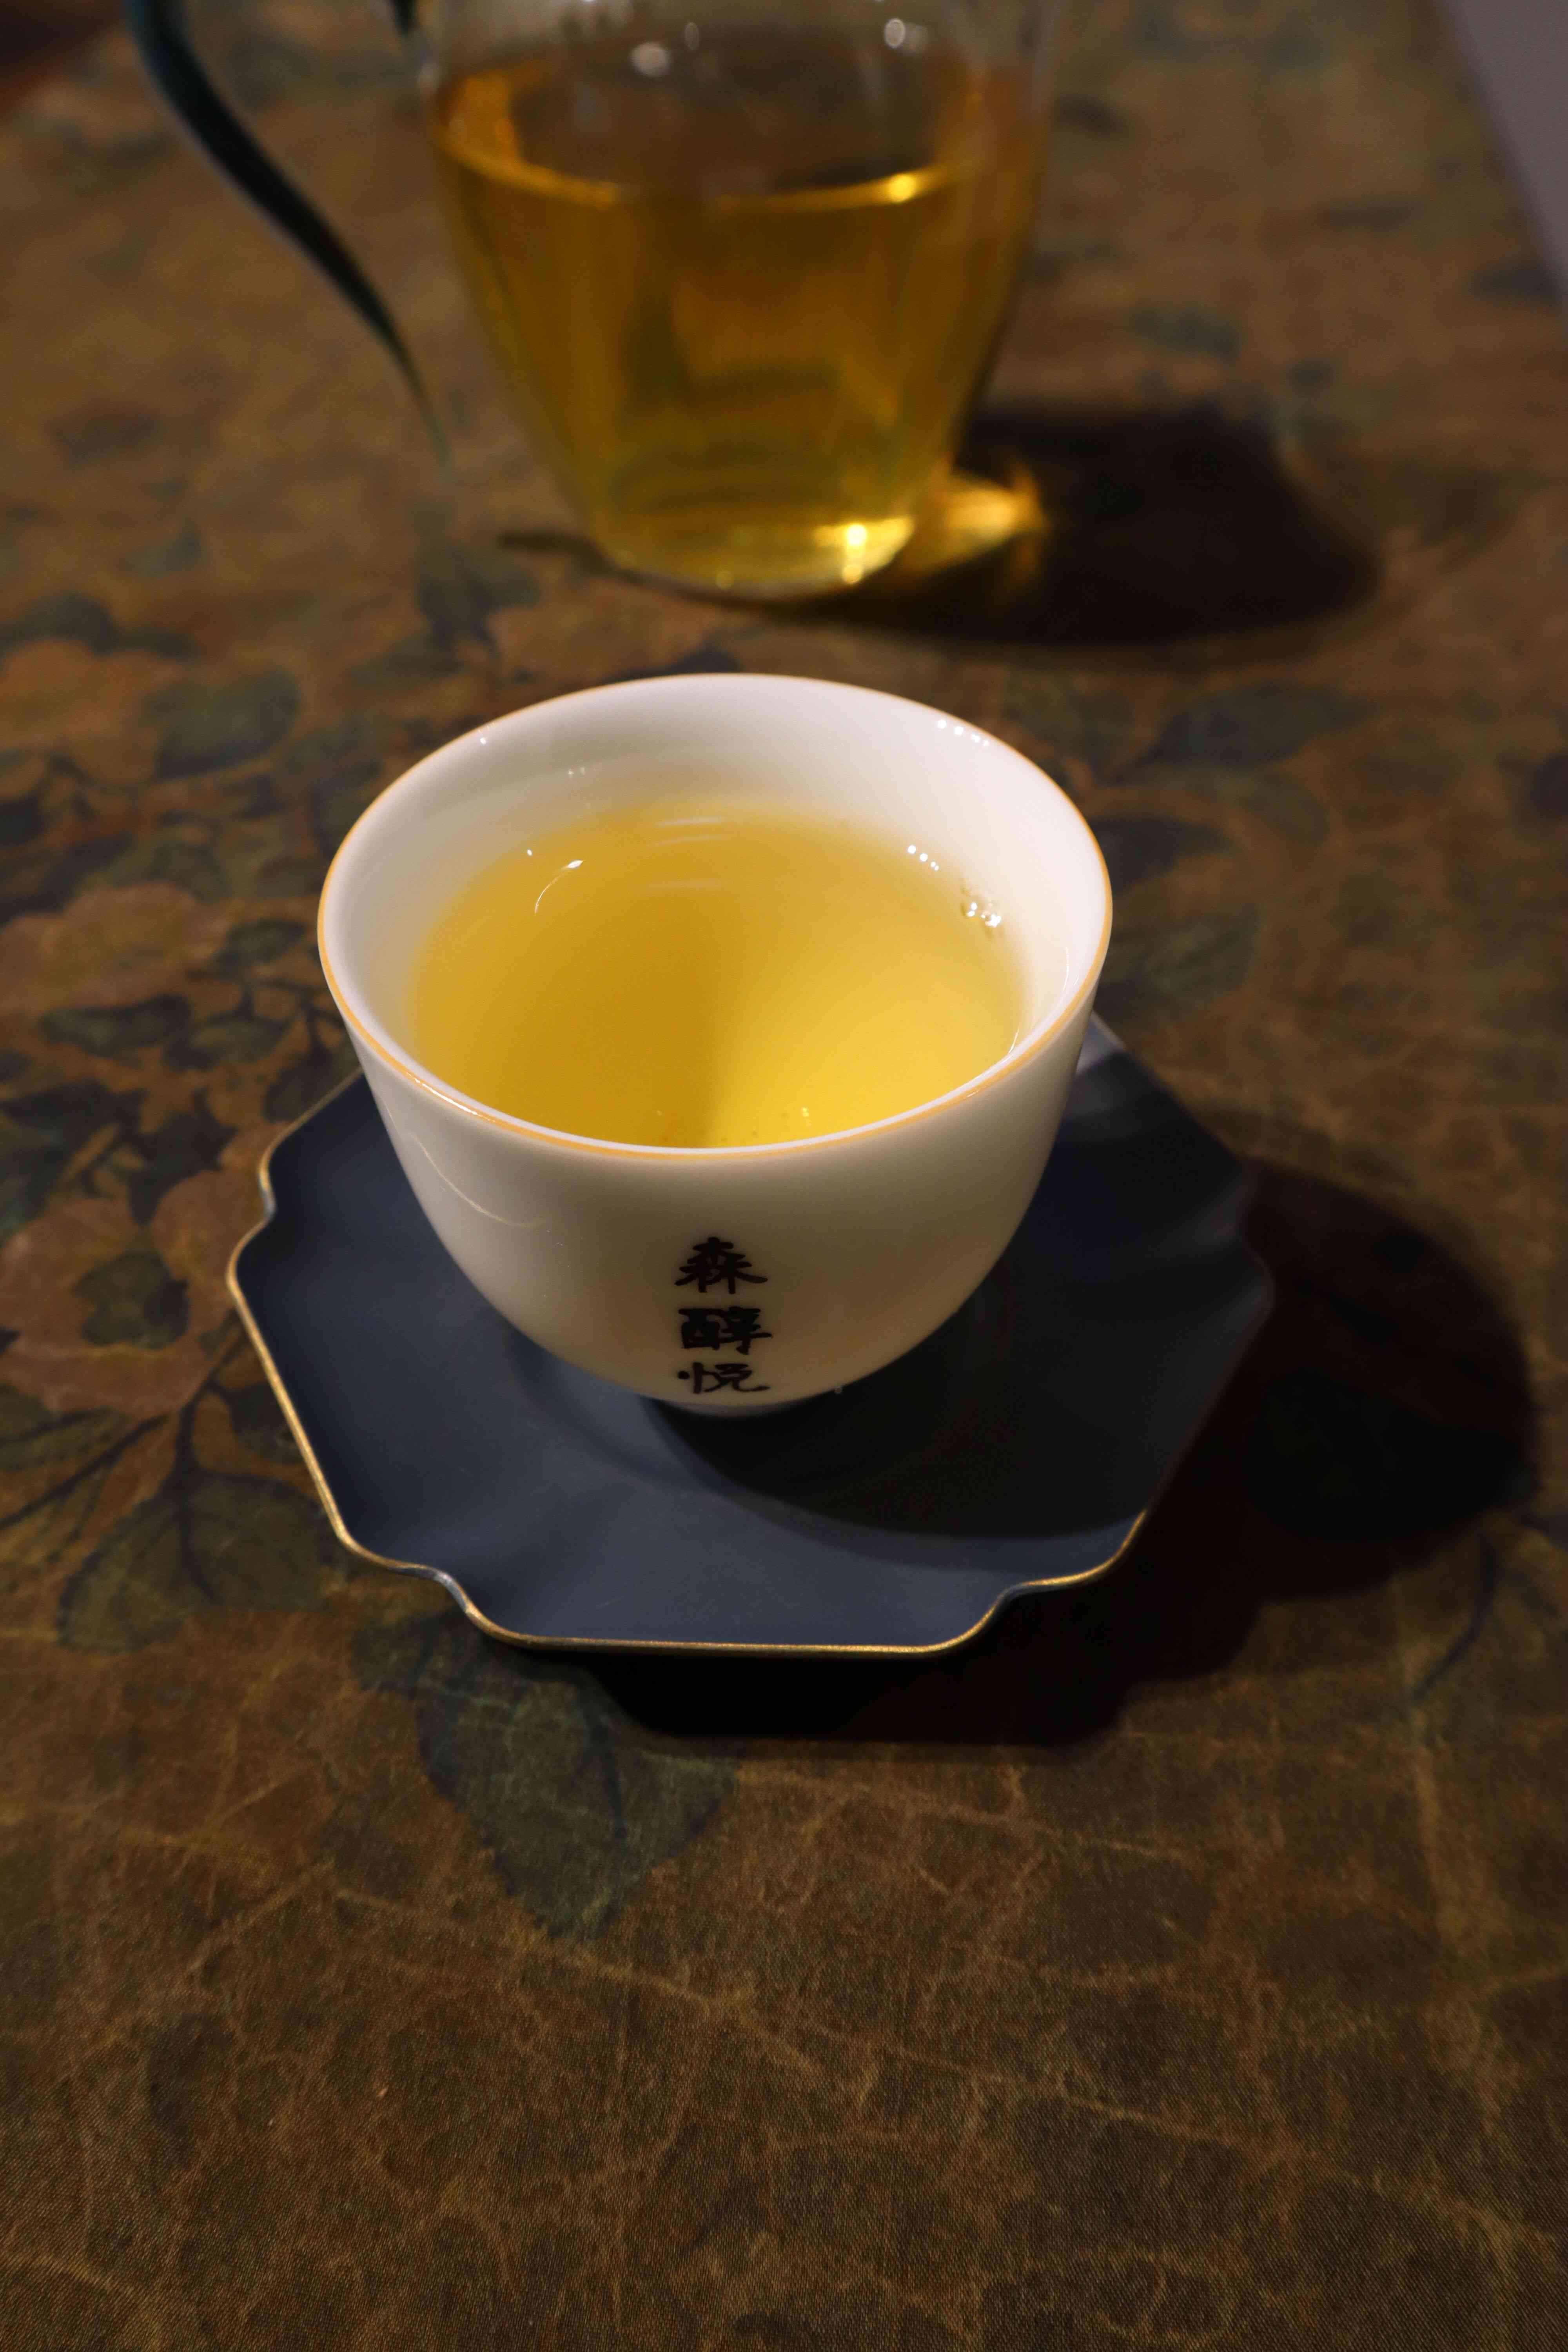 普洱茶是乌龙茶吗？为什么？普洱茶属于哪个茶系？请百度百科。